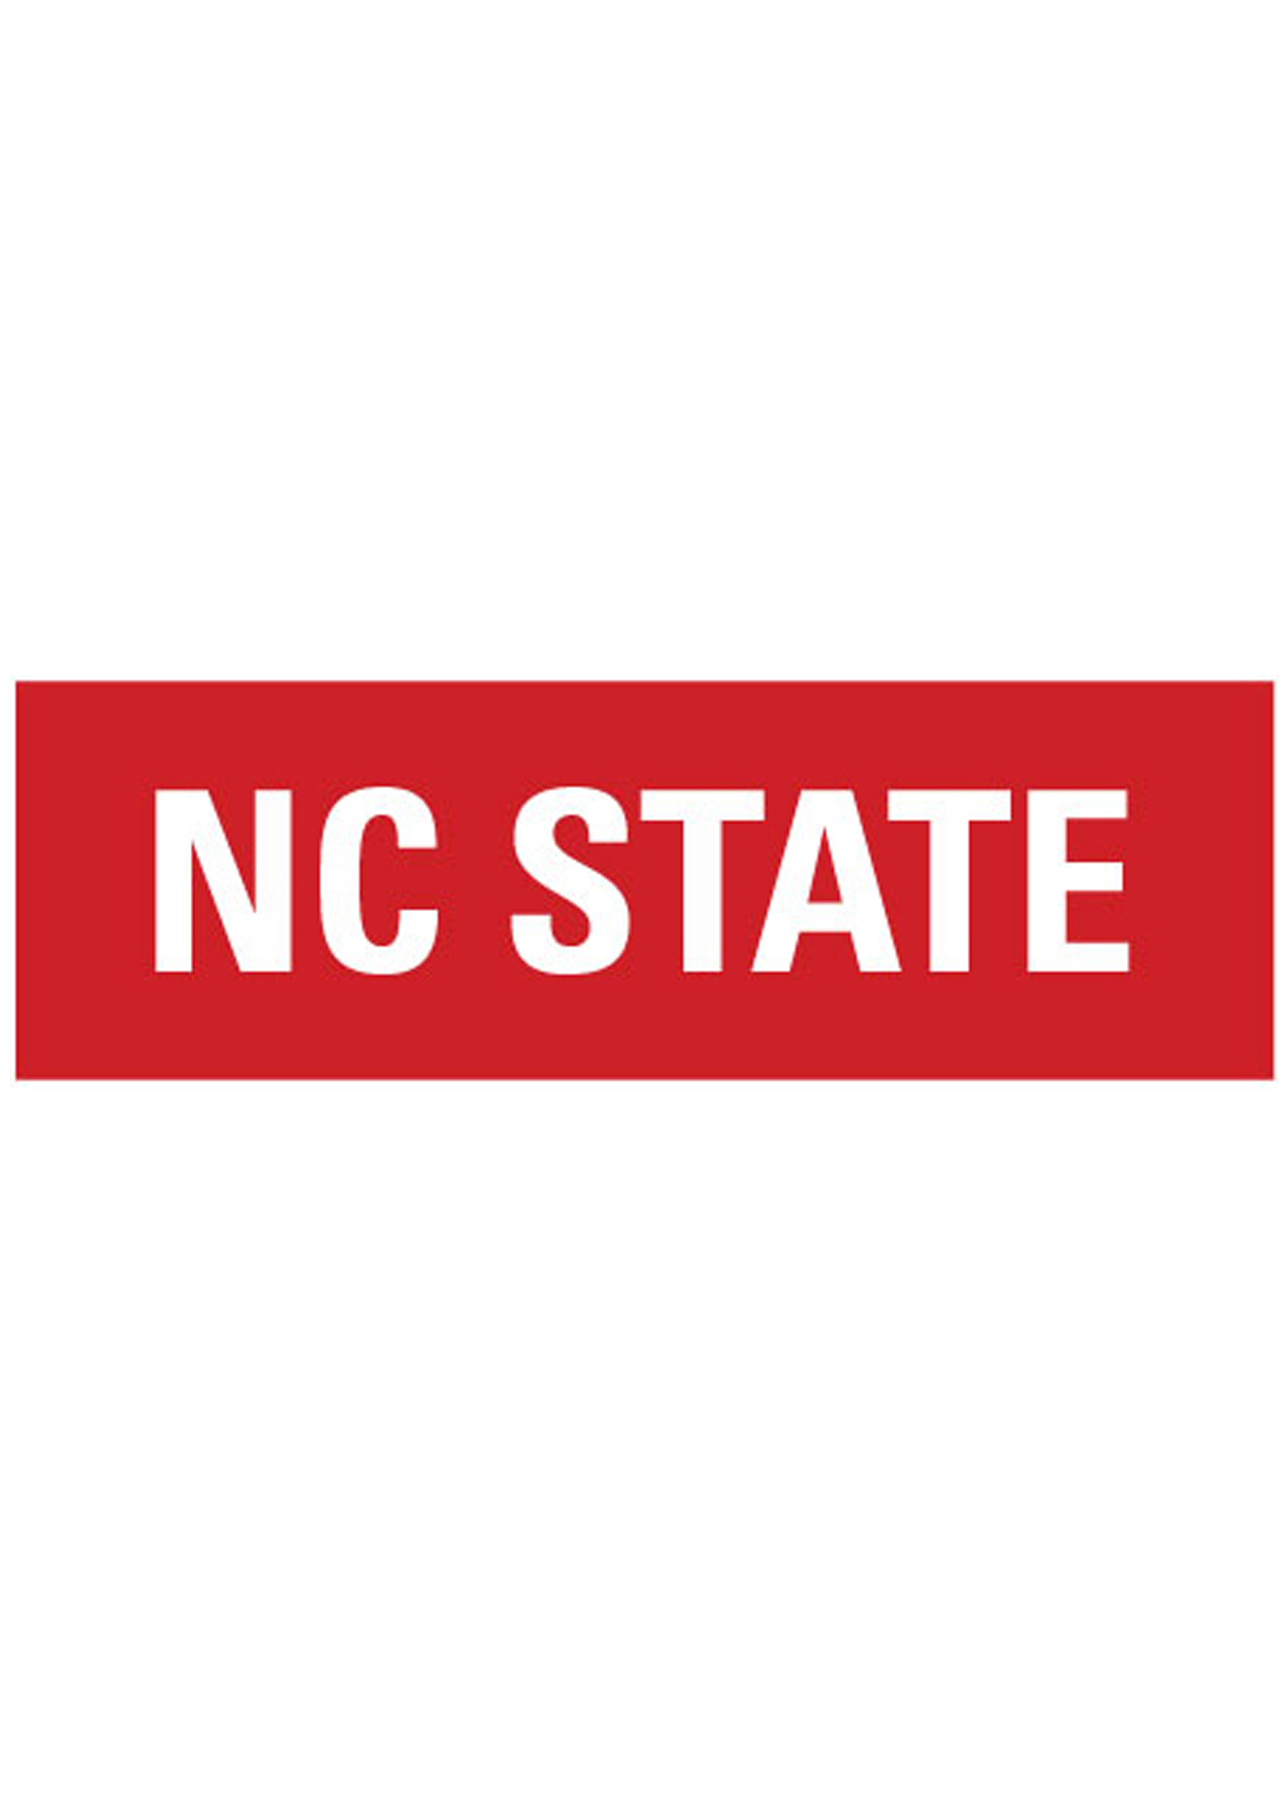 NC State University